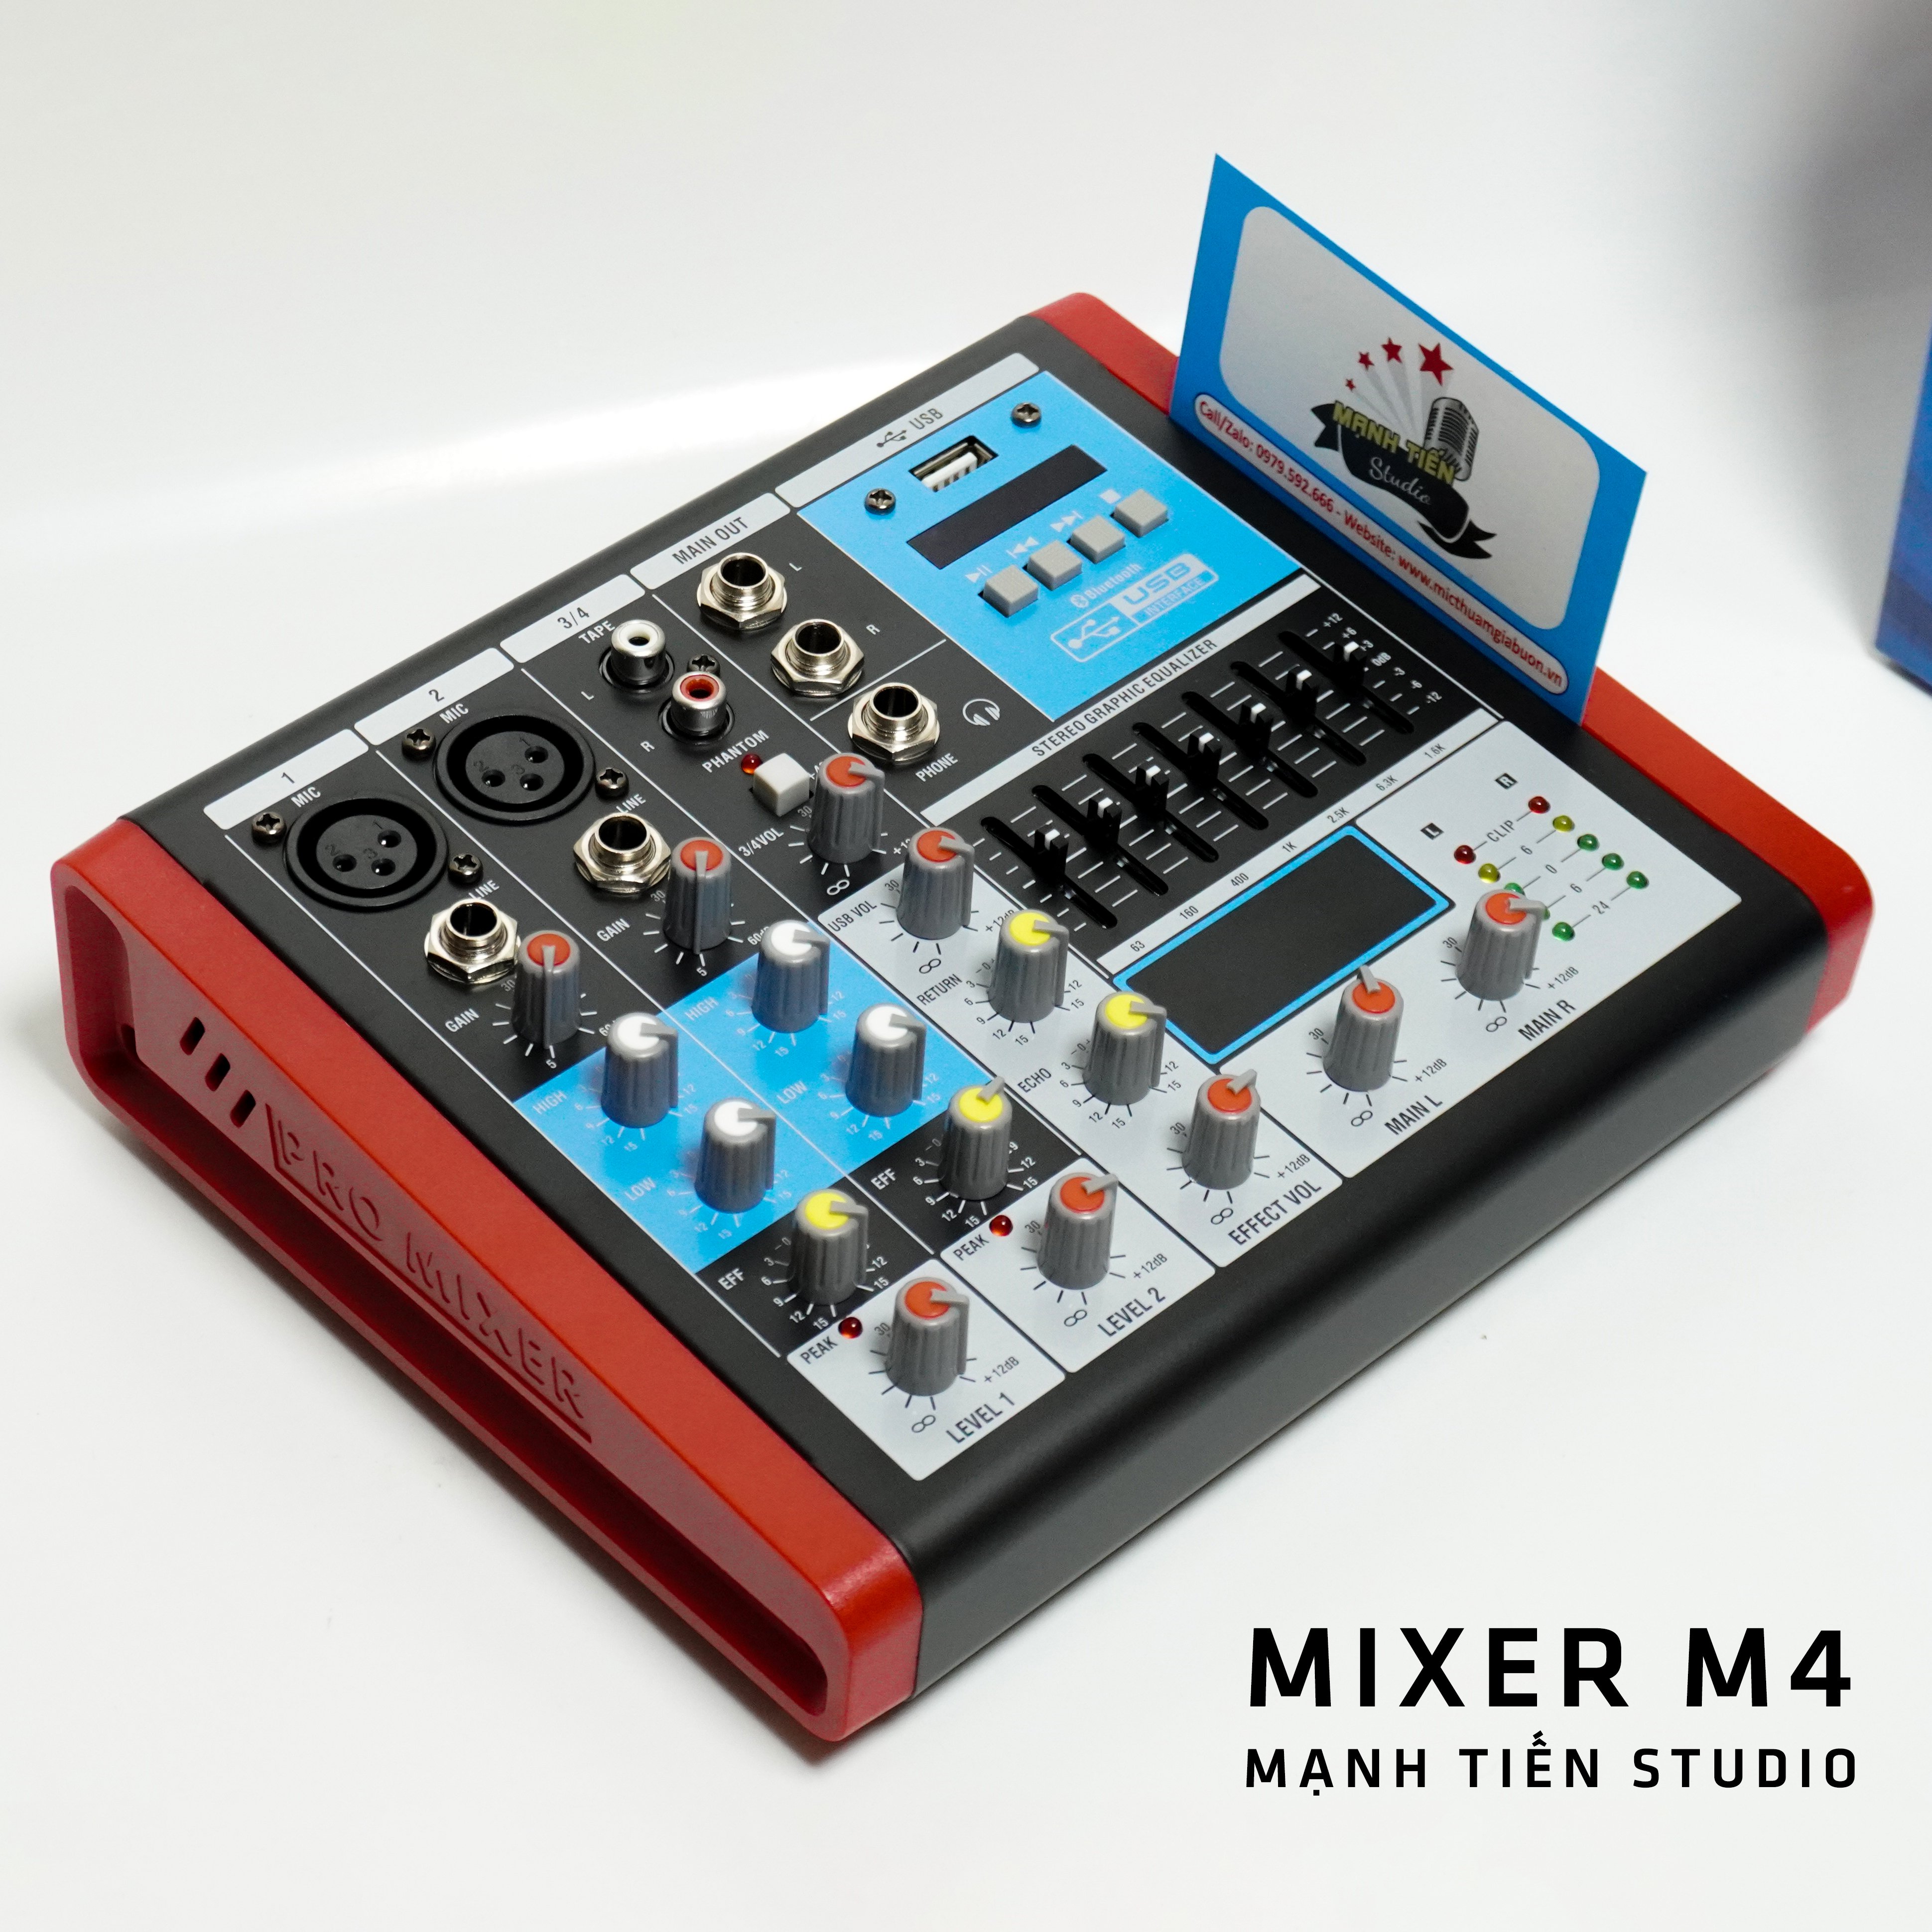 Bàn trộn âm thanh mixer max 04 - 4 kênh âm thanh nổi - Tích hợp bộ cân bằng Equalizer chuyên nghiệp - Kết nối dễ dàng với bluetooth - Mixer chuyên dùng cho loa kéo, dàn karaoke gia đình, thu âm, livestream - Hàng nhập khẩu